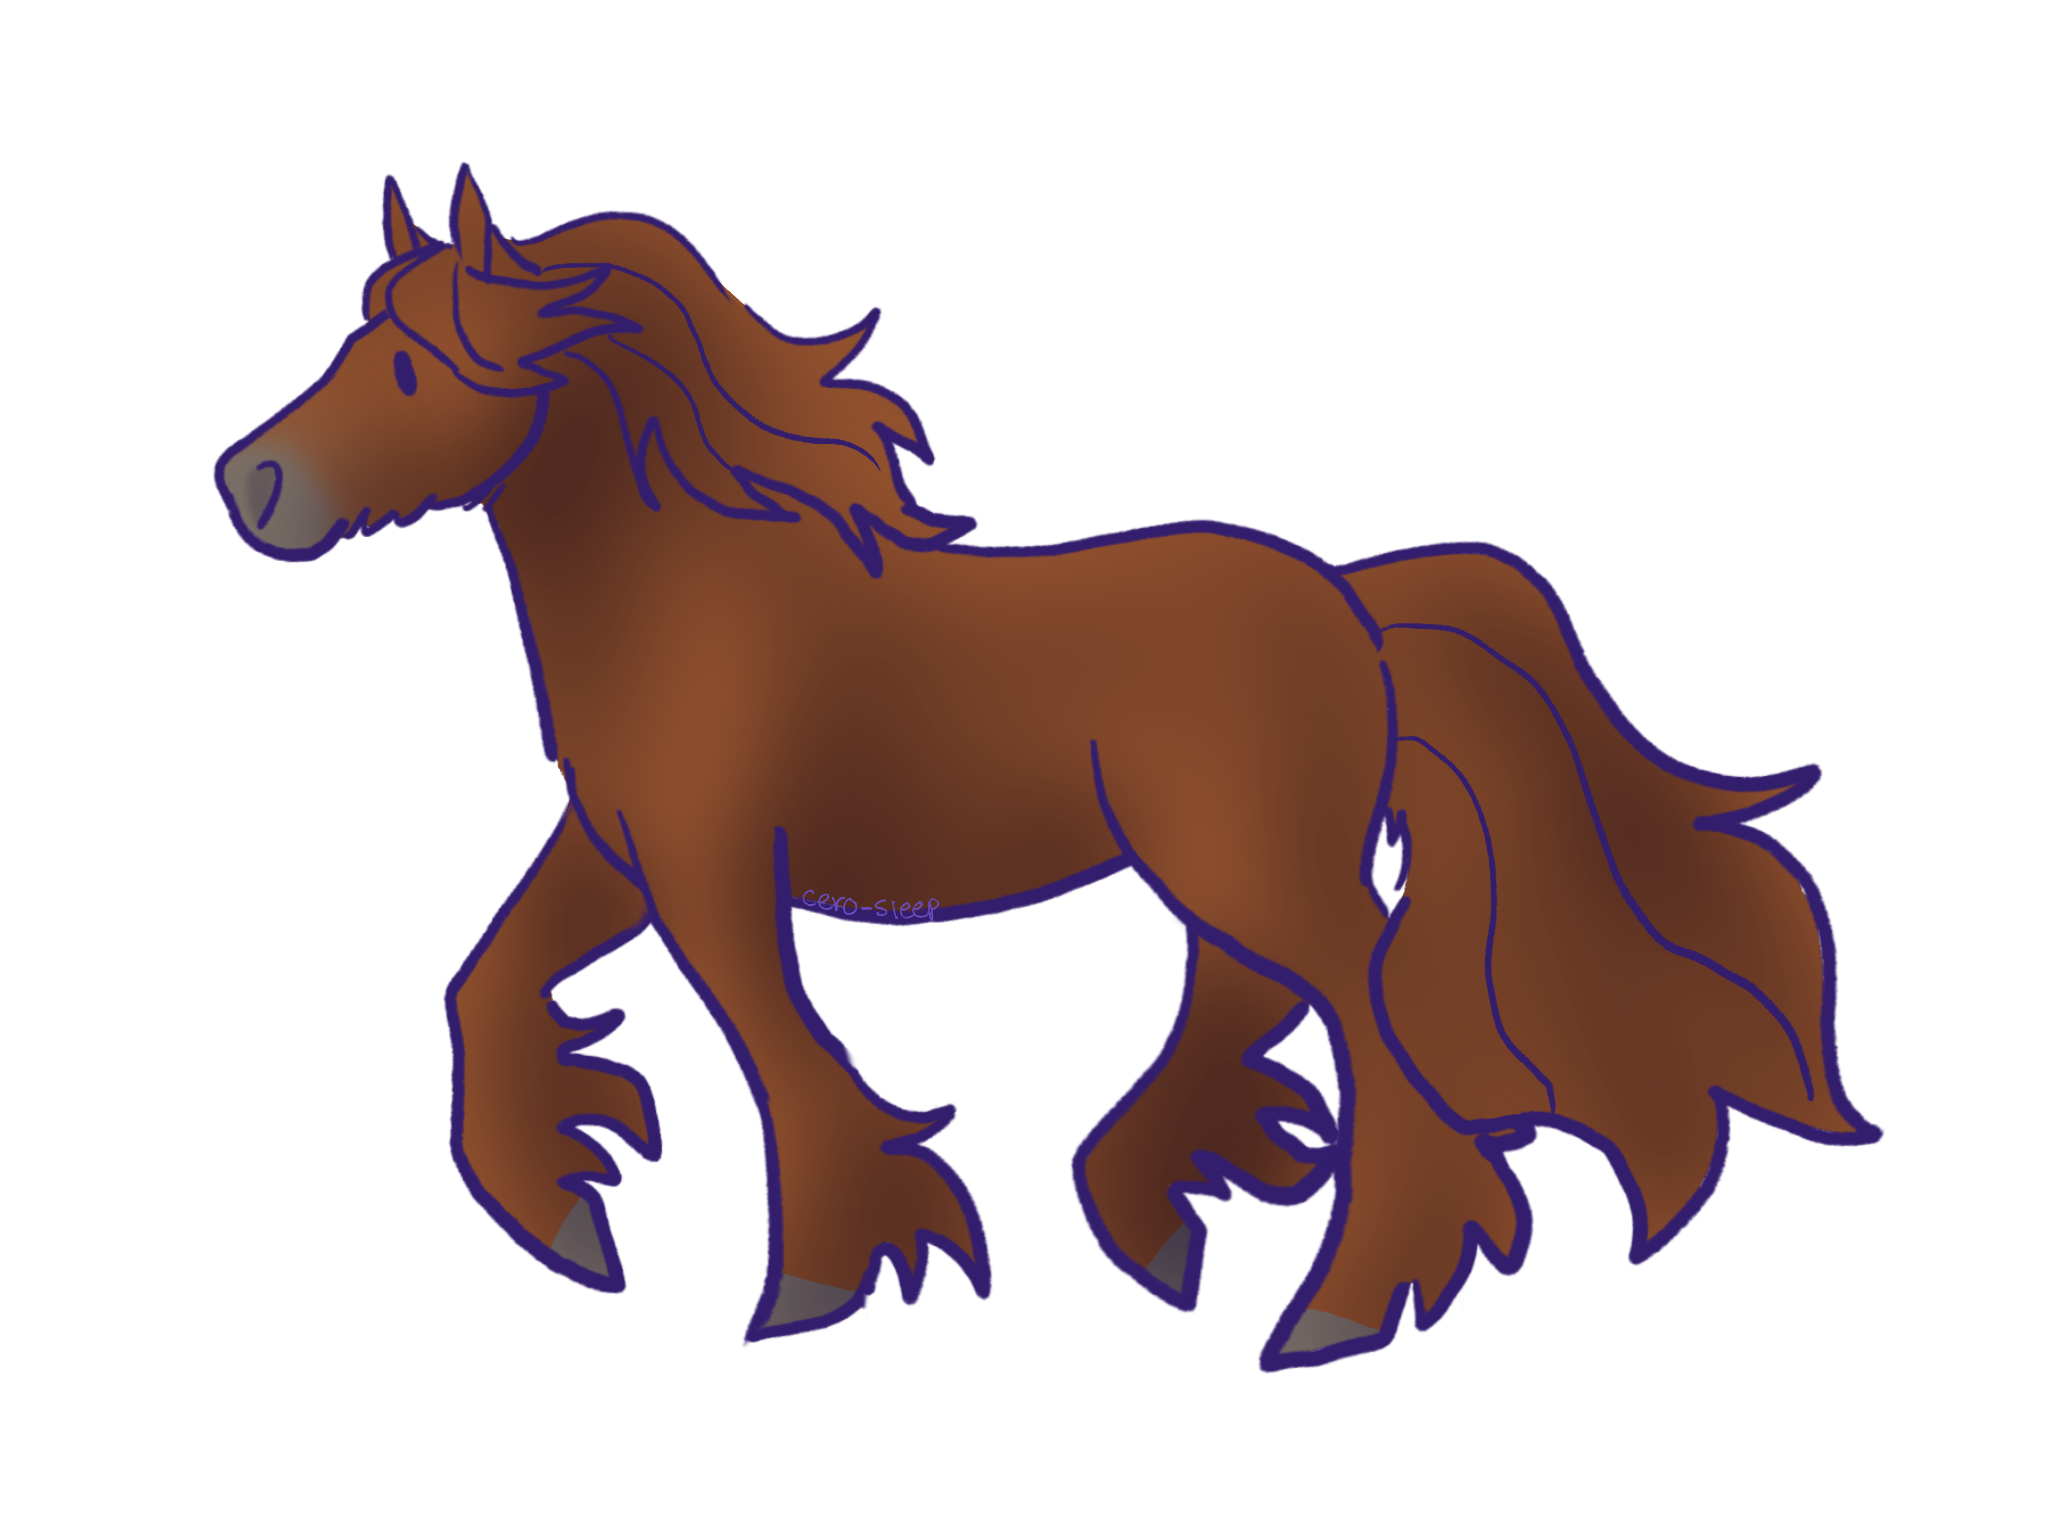 Dibujo de un caballo alazán trotando.